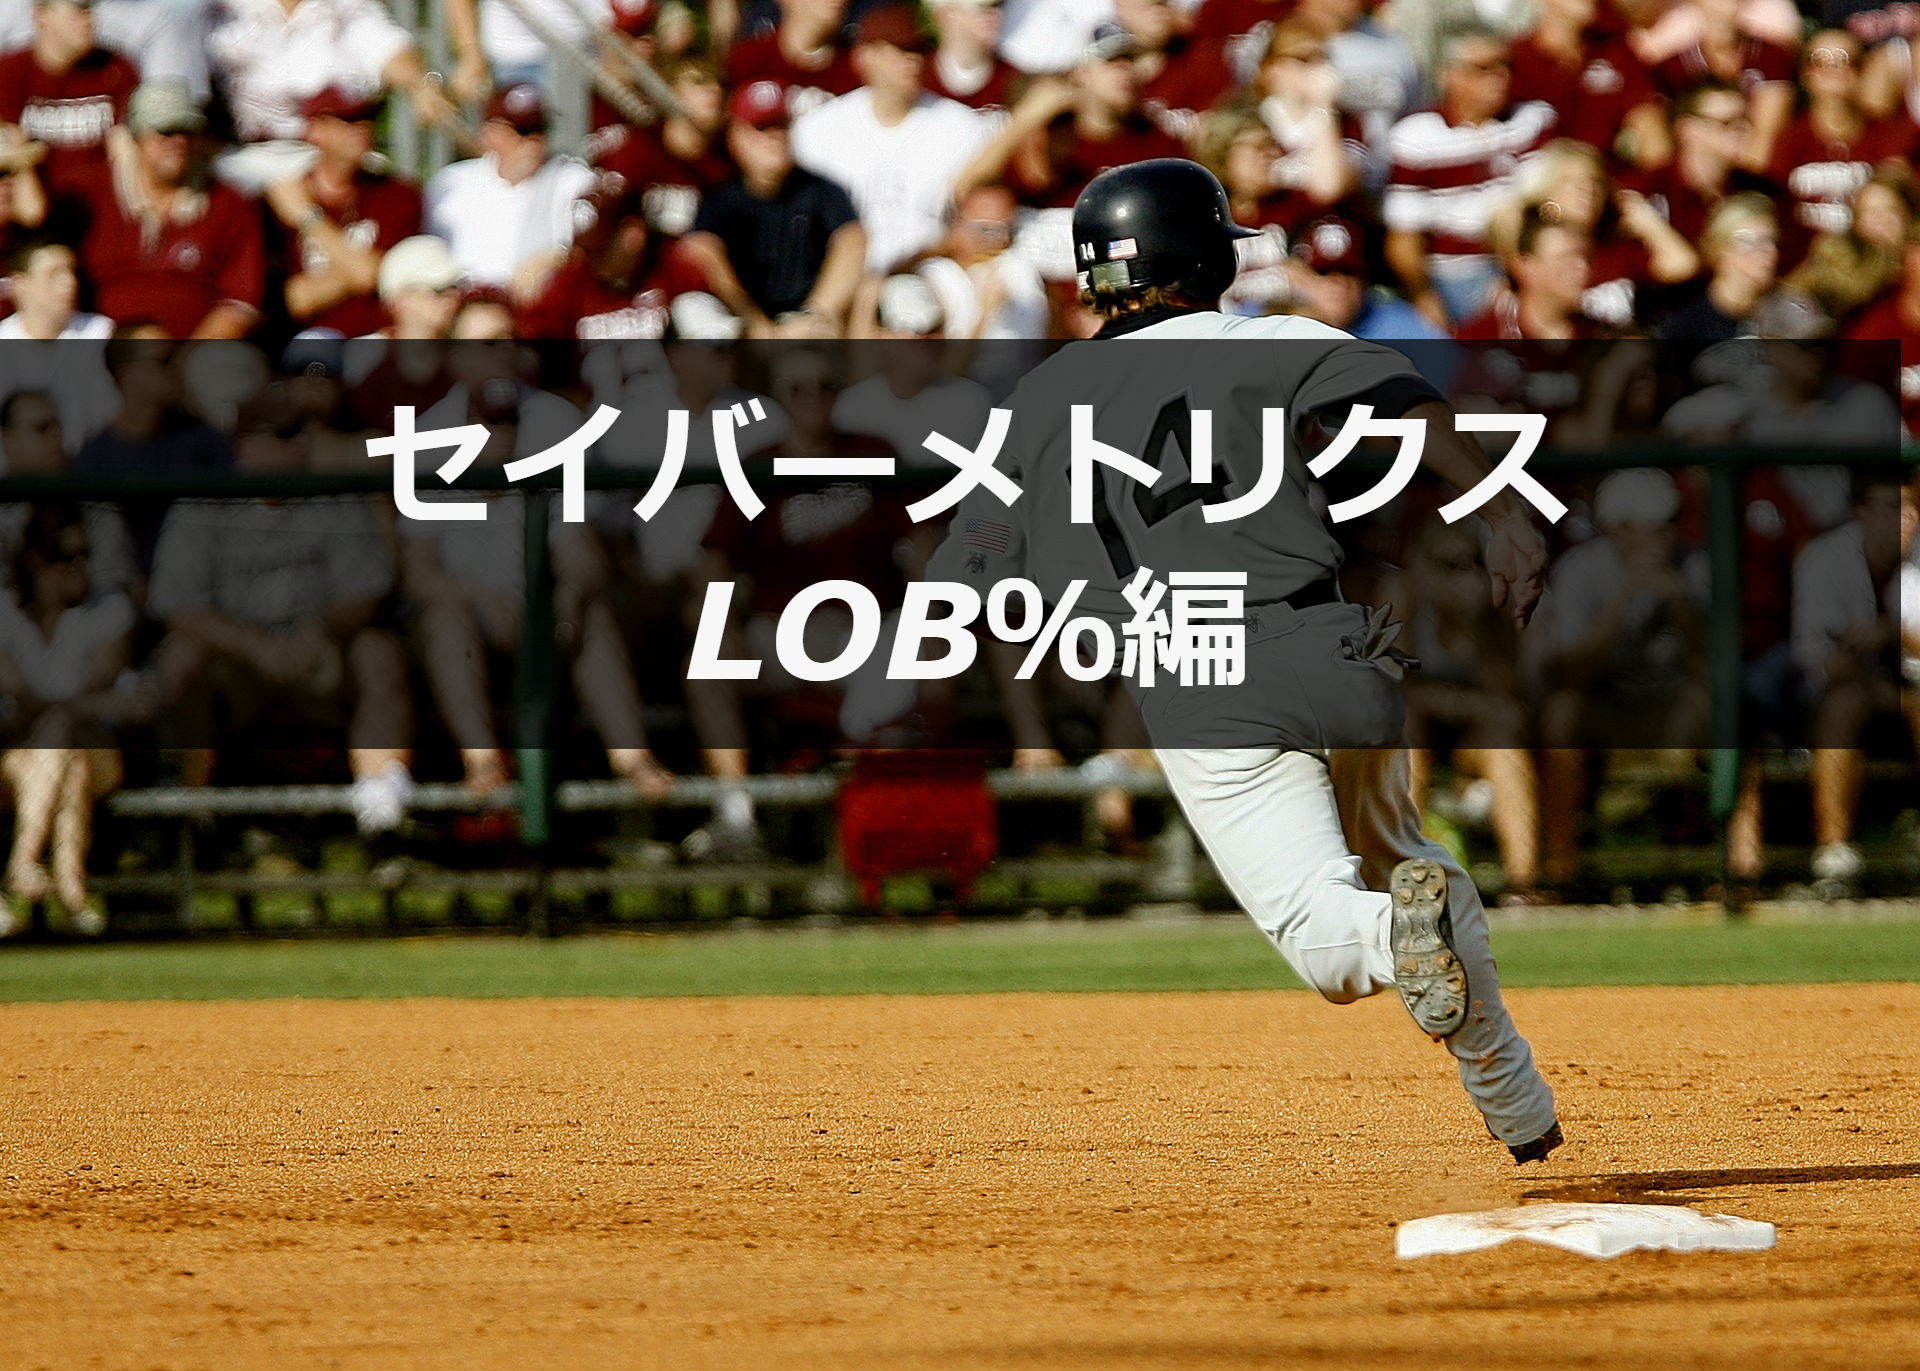 lob とは 野球